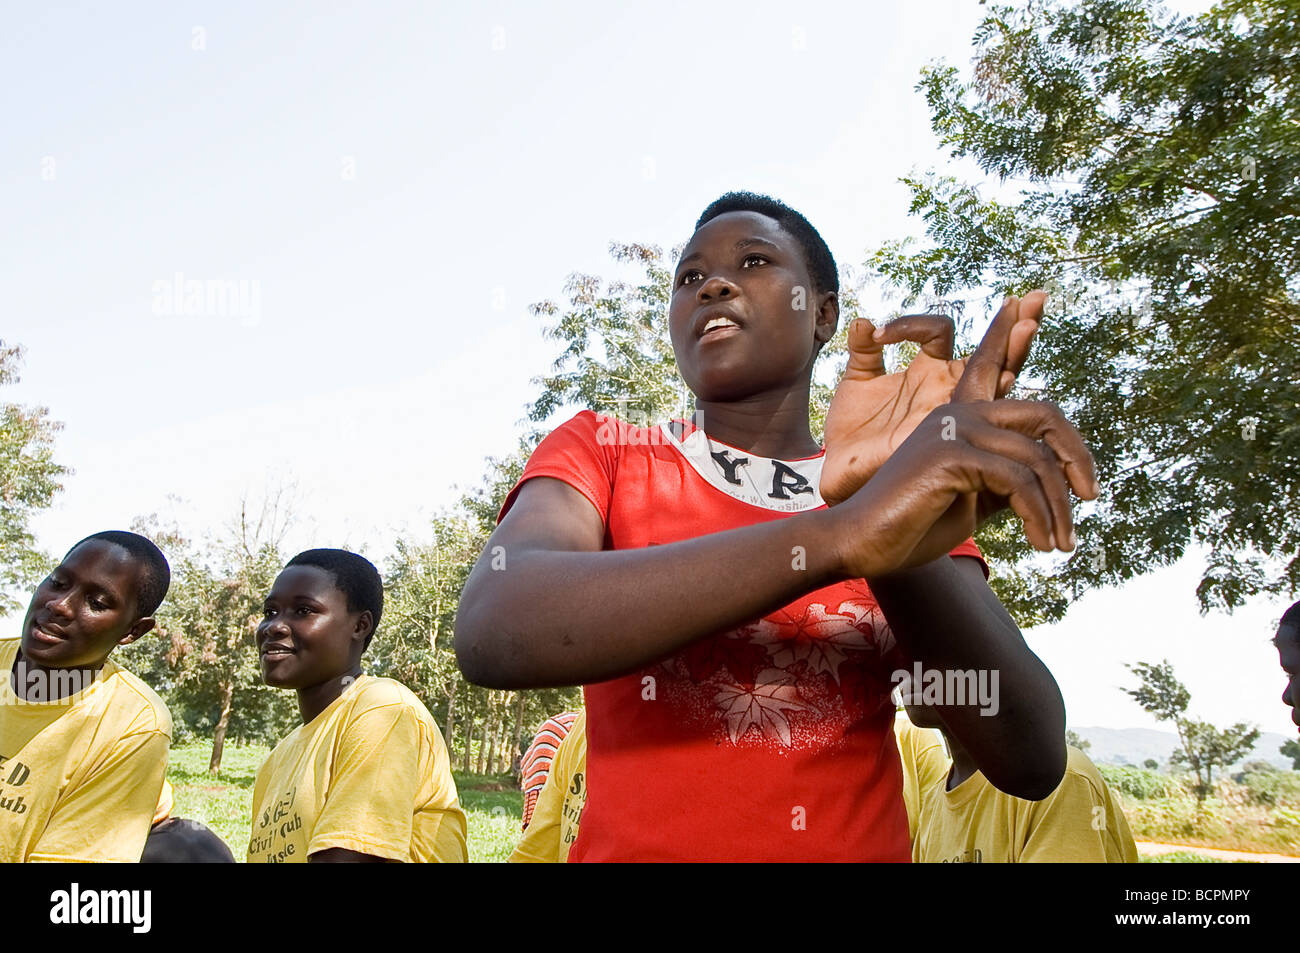 Le chant et la danse lors d'une cérémonie de la société civile dans les régions rurales de l'Ouganda Banque D'Images